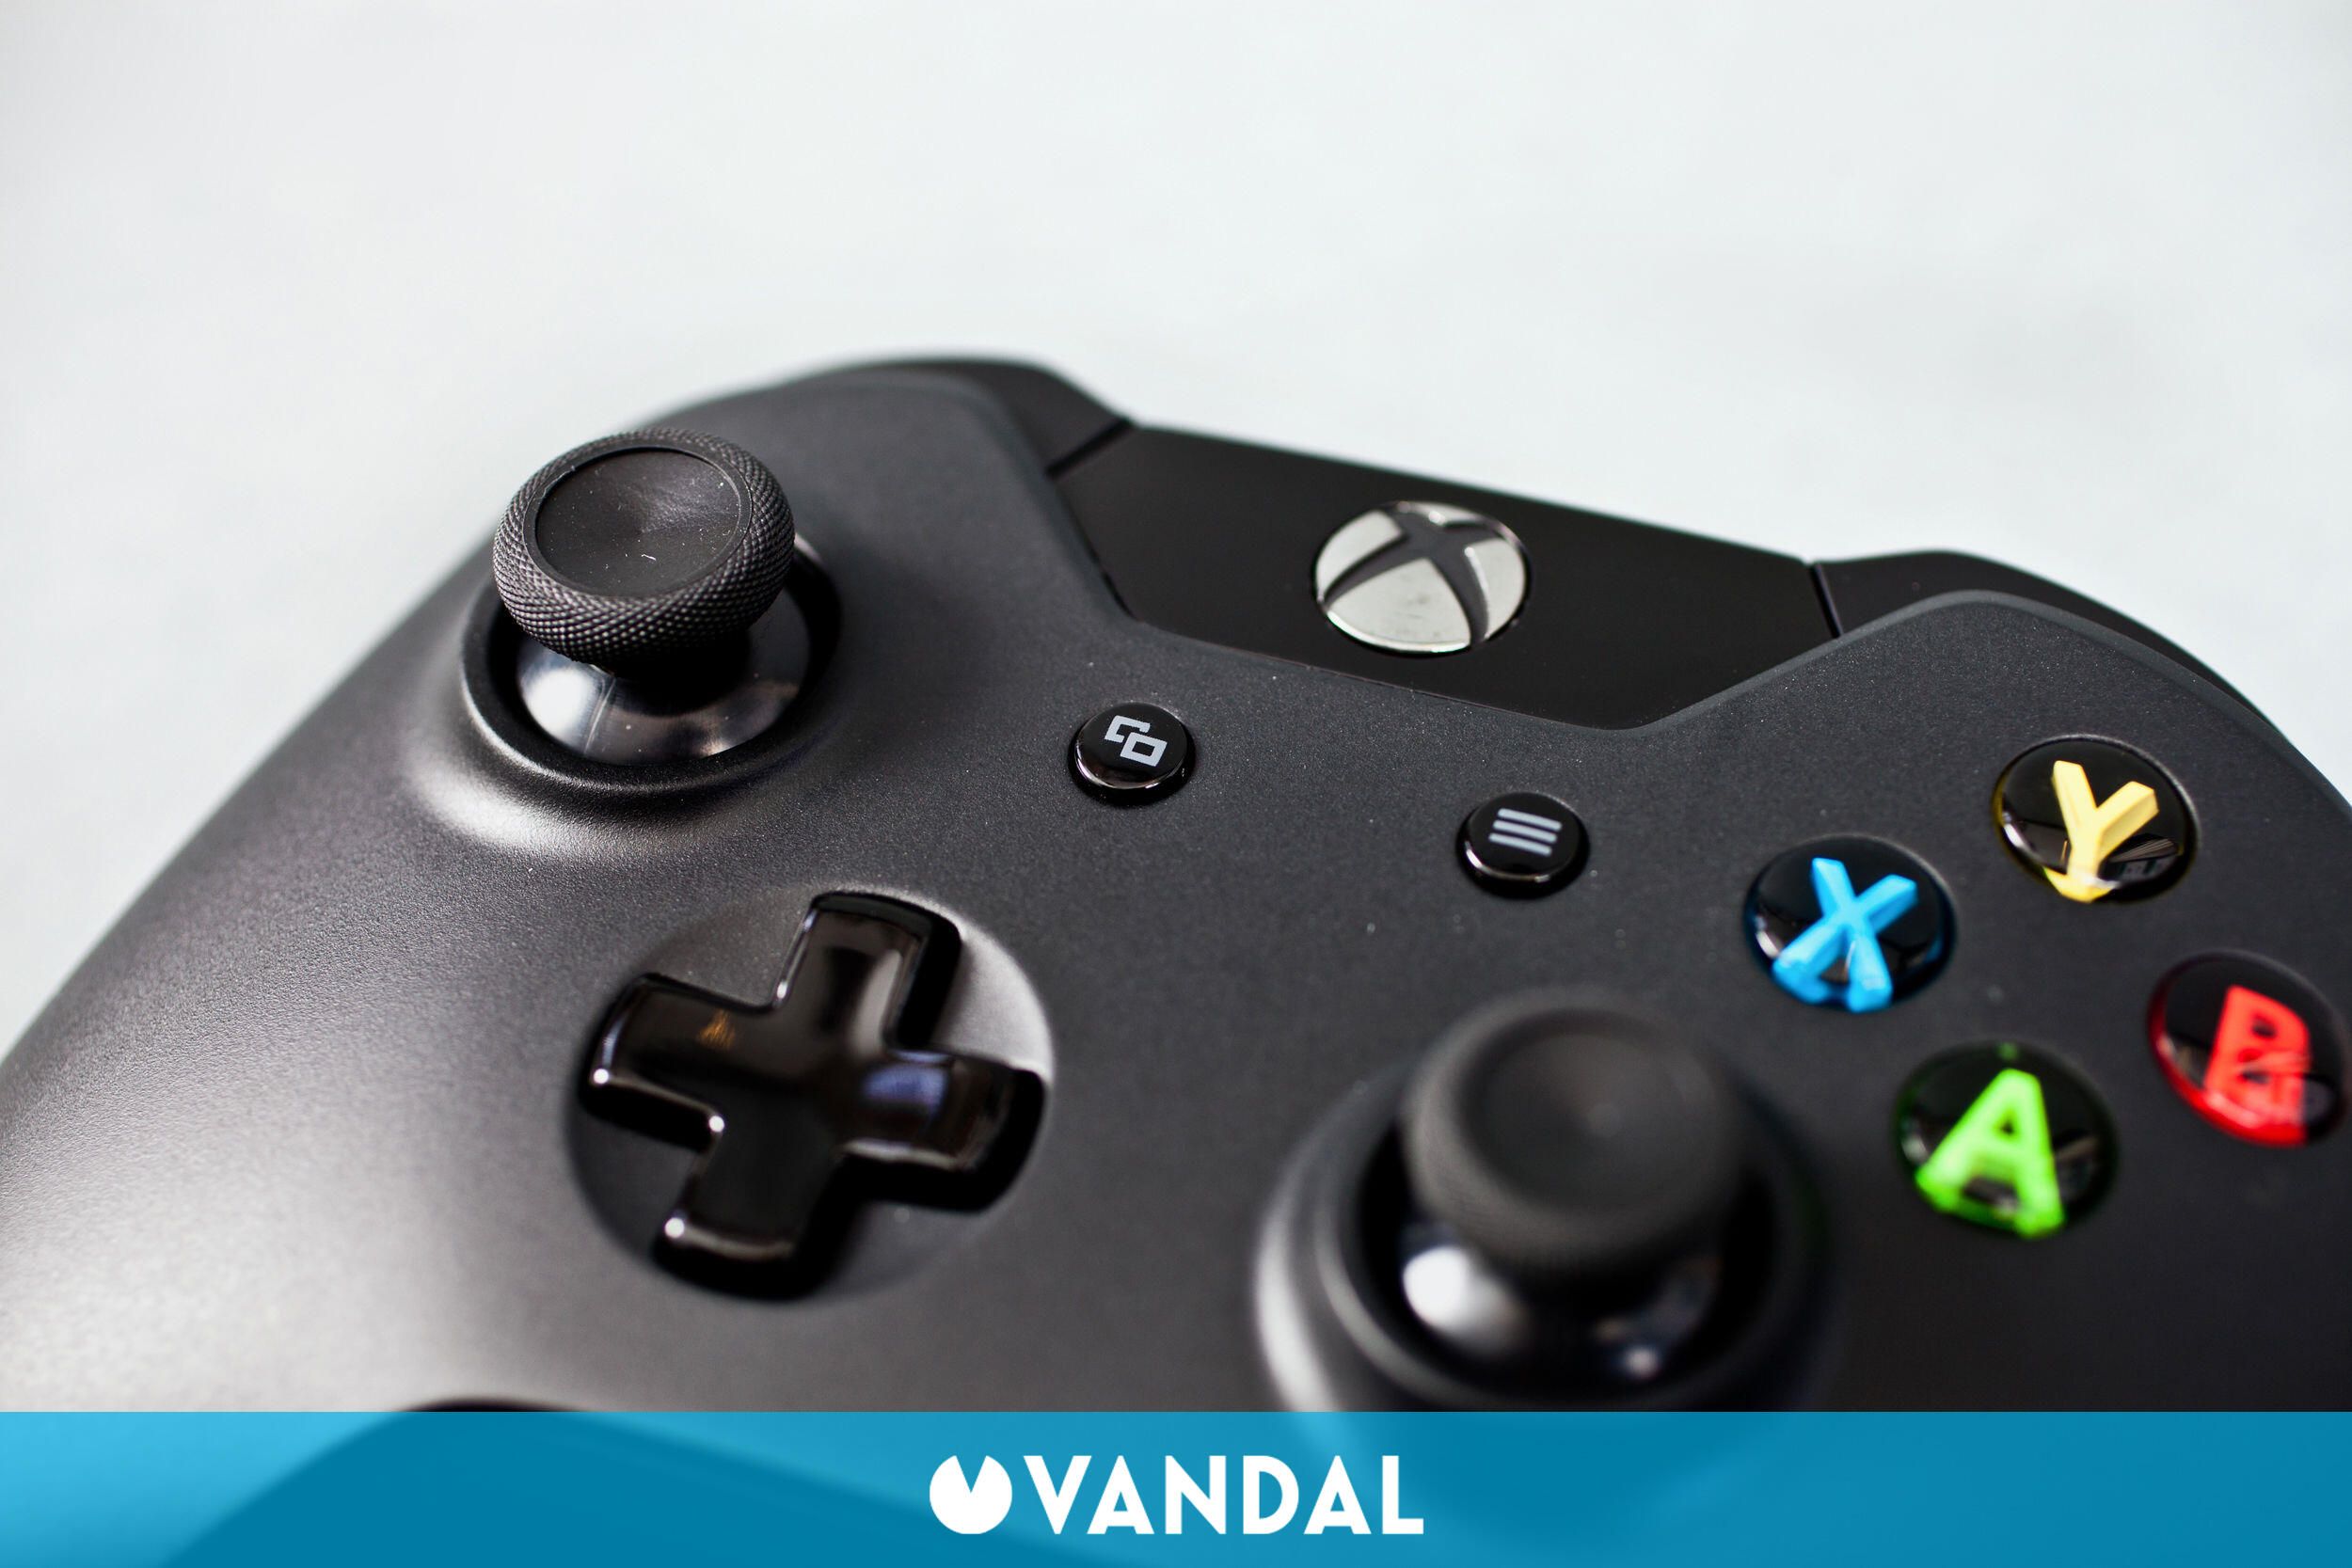 En otras palabras caloría curva Los botones 'Menu' y 'View' reemplazarán a Back y Start en Xbox One - Vandal